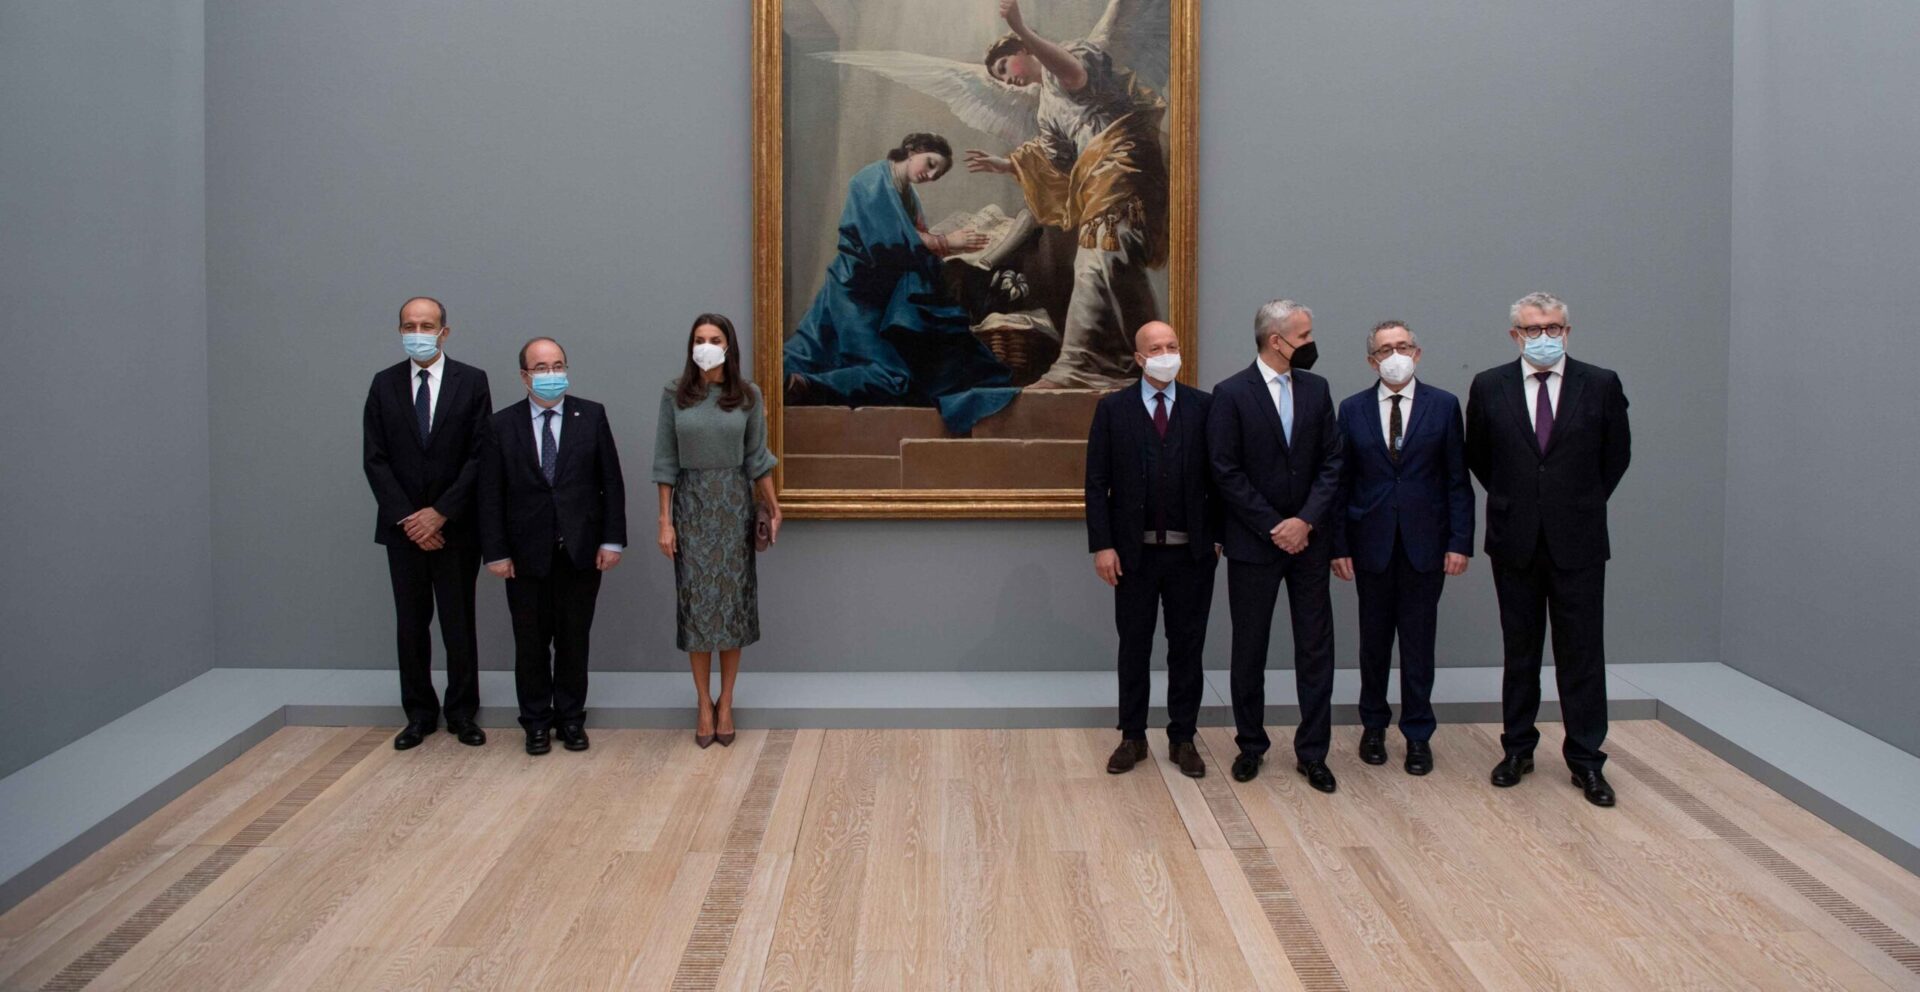 Inauguración oficial de la exposición Goya de la Fundación Beyeler con Su Majestad la Reina Letizia de España Foto Eddy Meltzer